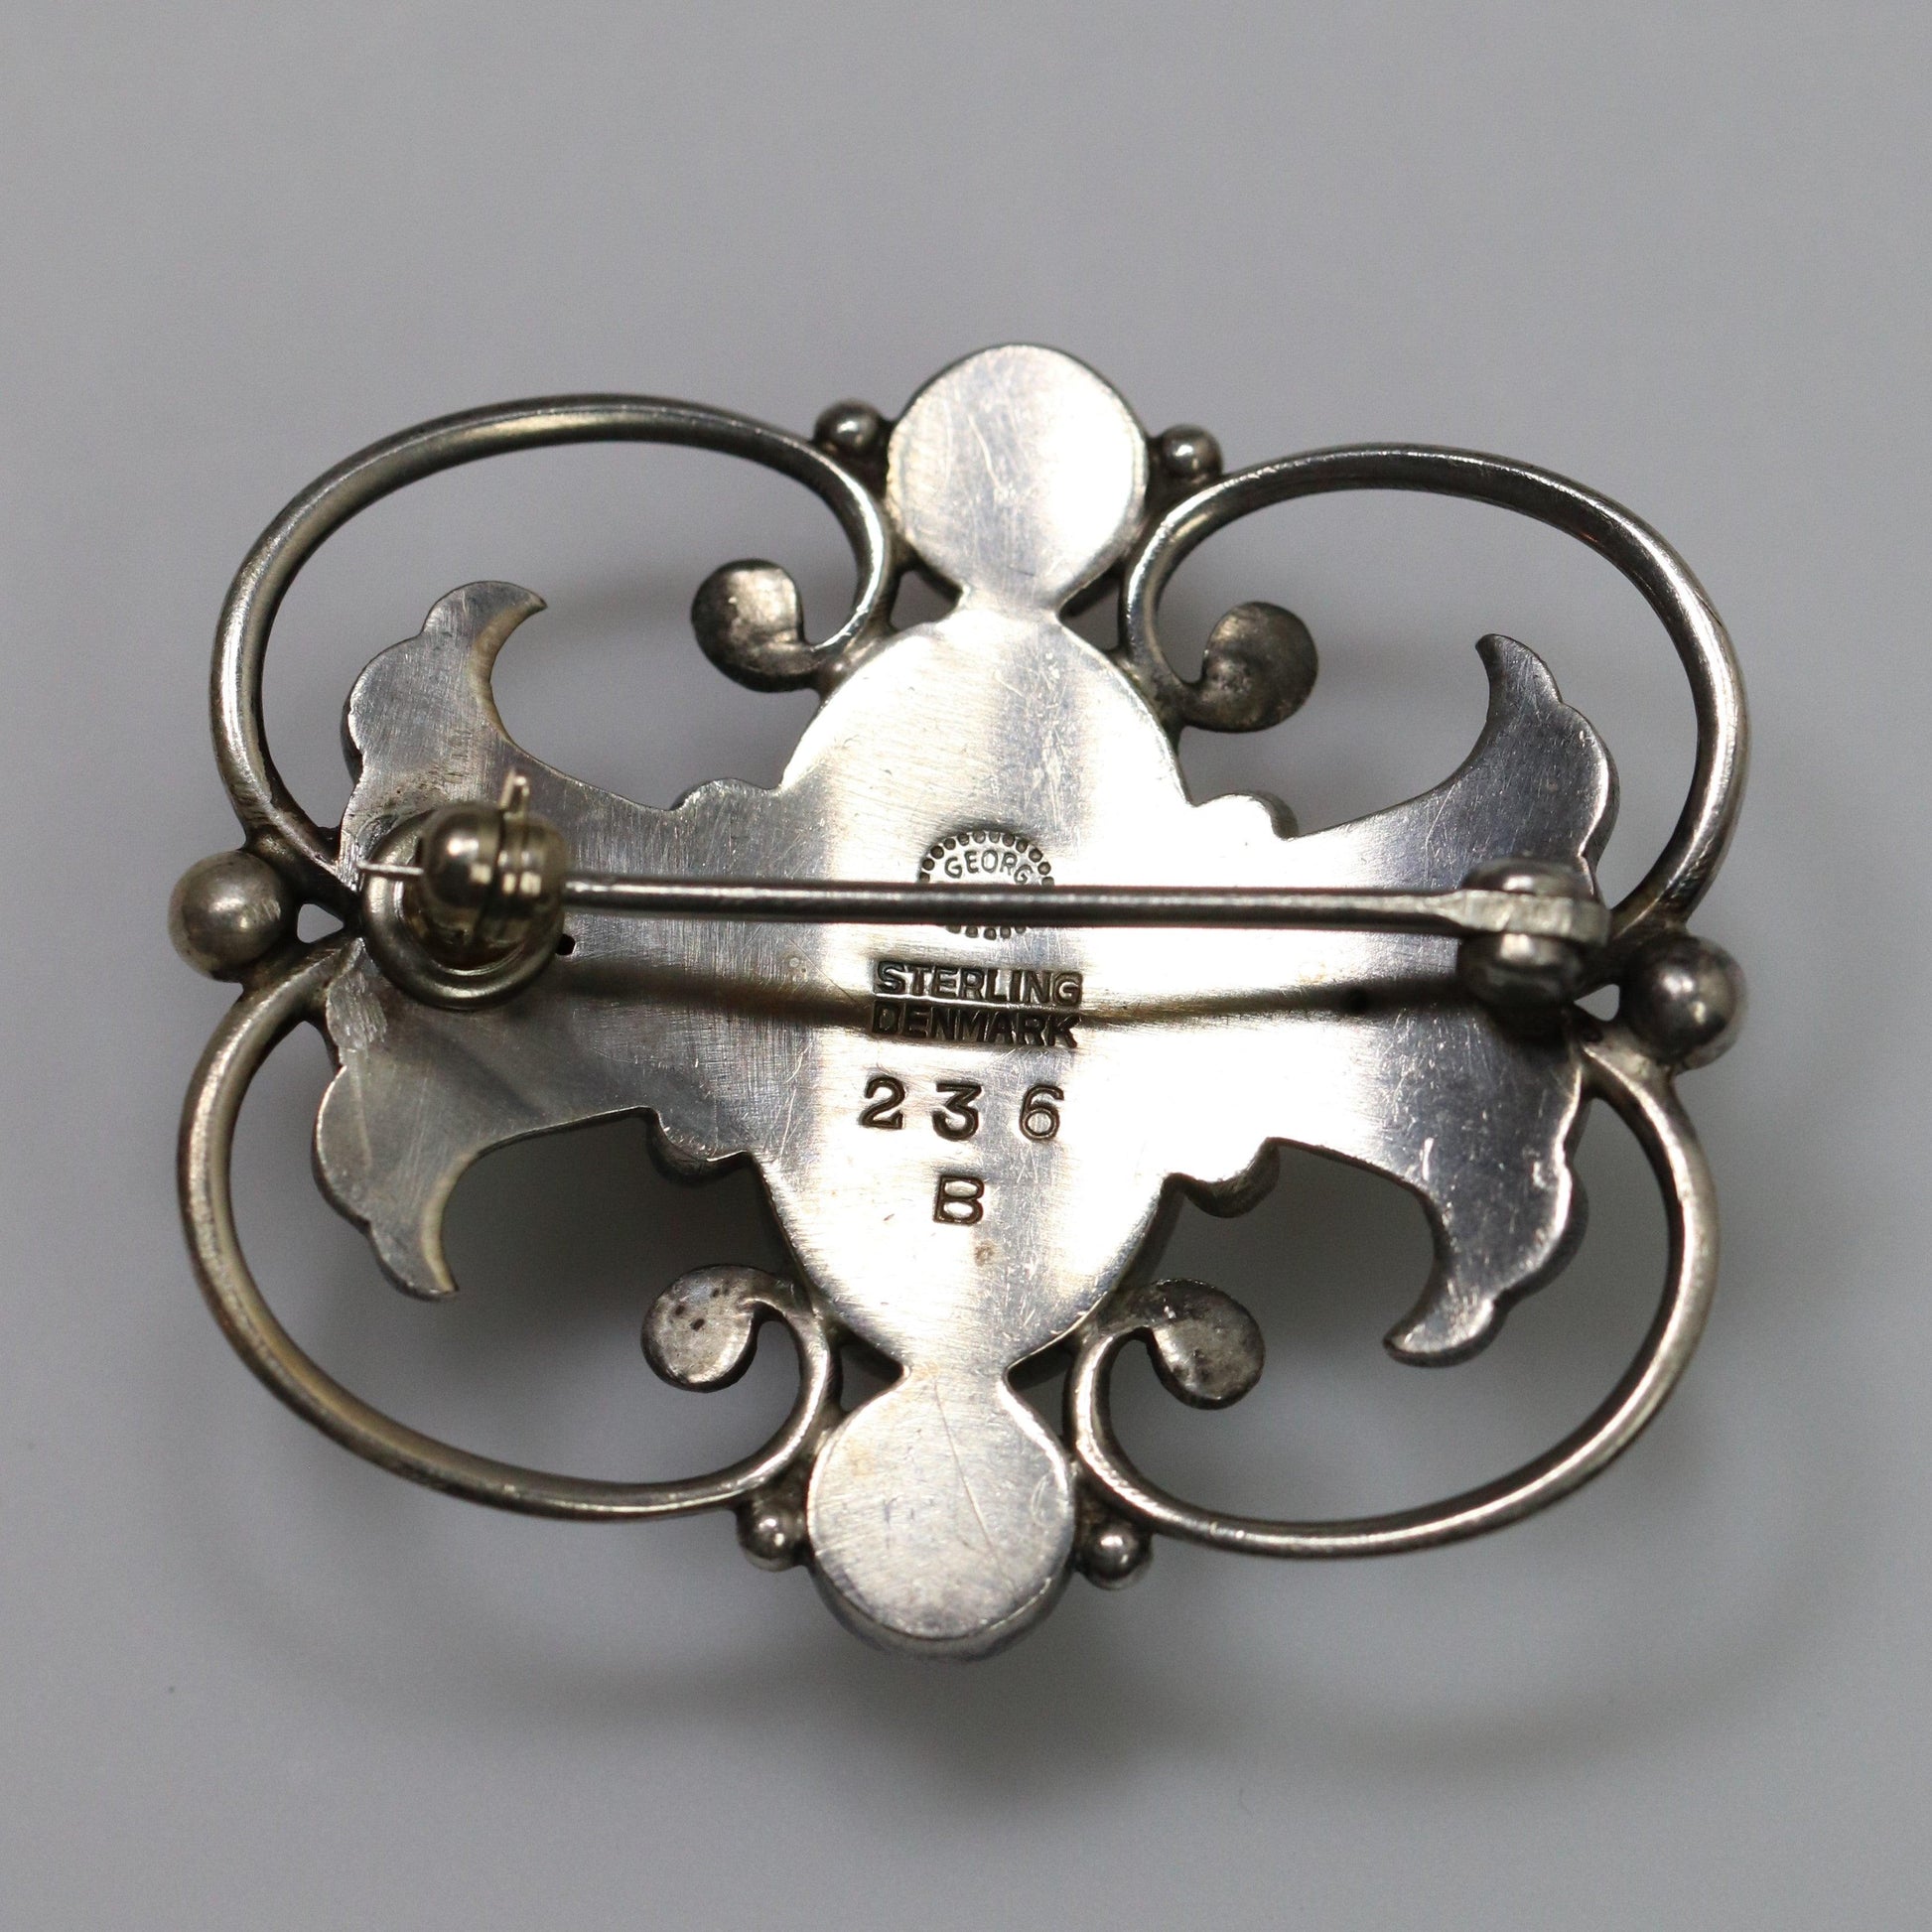 Georg Jensen Jewelry  Ornate Art Nouveau Silver Vintage Brooch